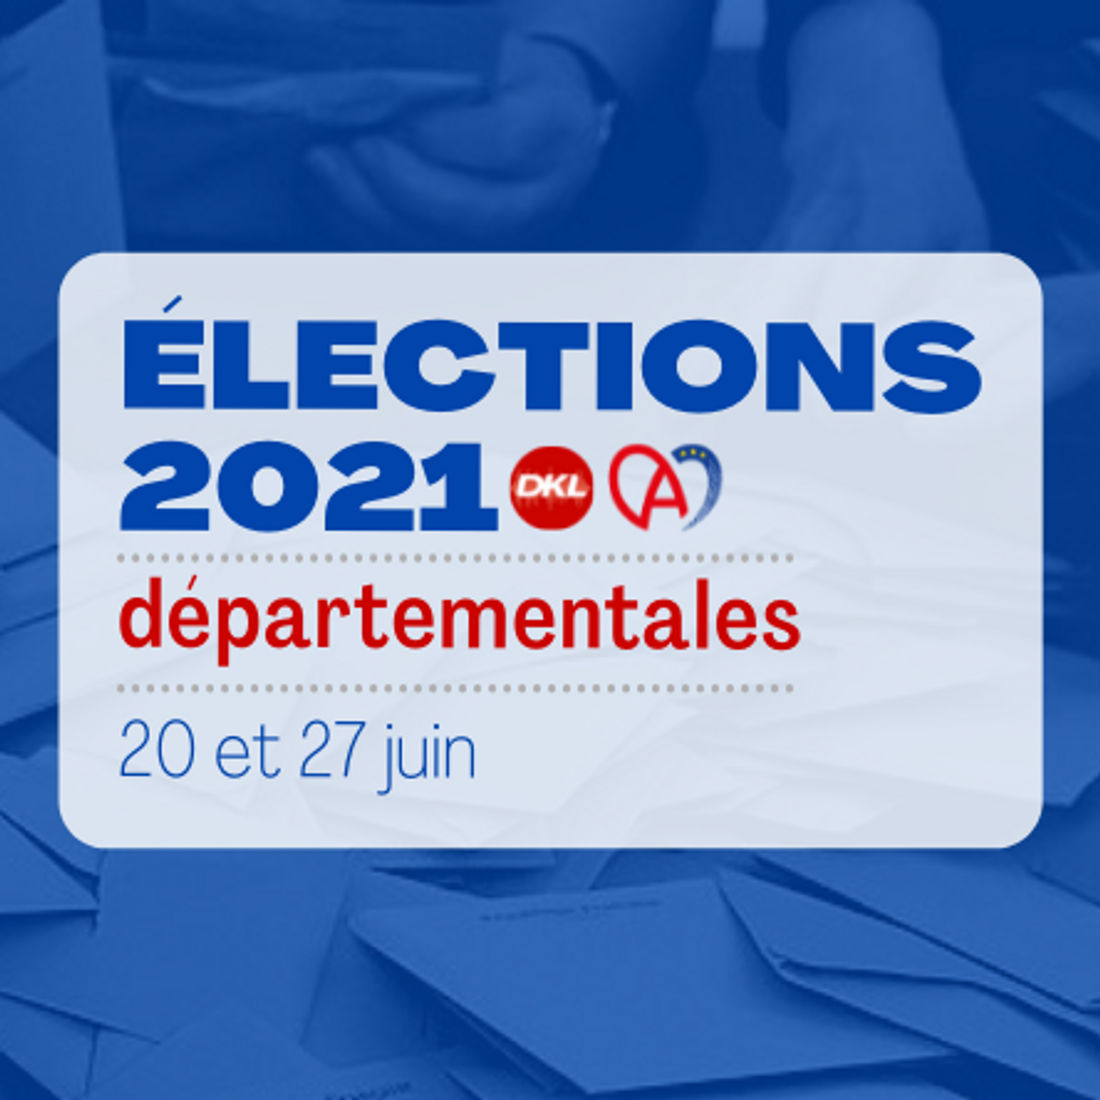 LOGO ELECTIONS DEPARTEMENTALES 2021 DKL